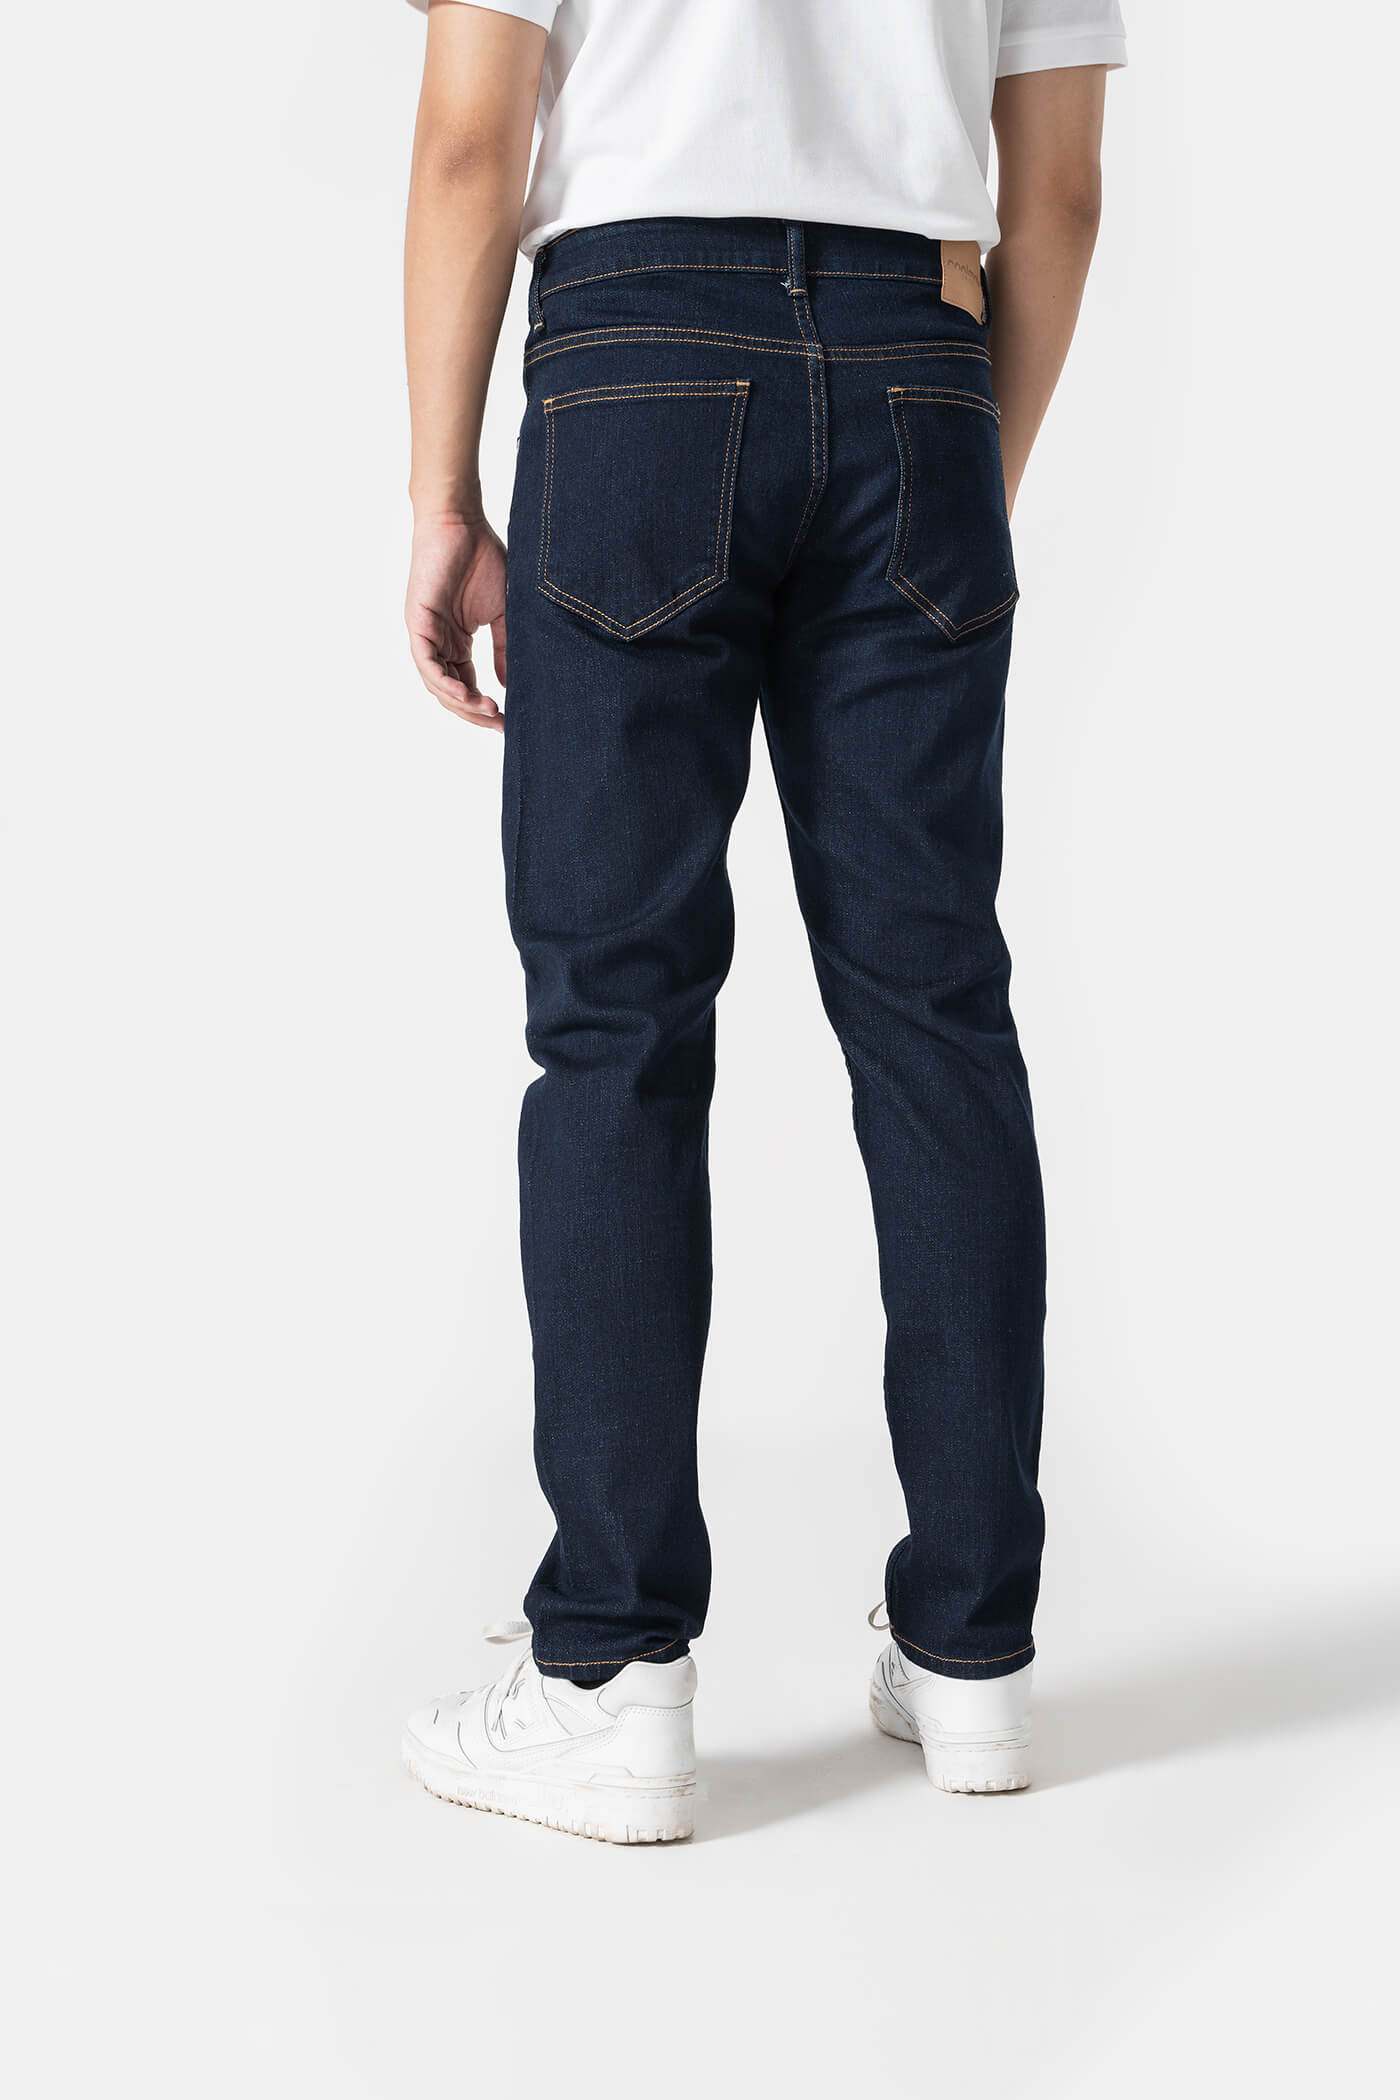 Quần Jeans Nam dáng Slim Fit V2 xanh-garment 1